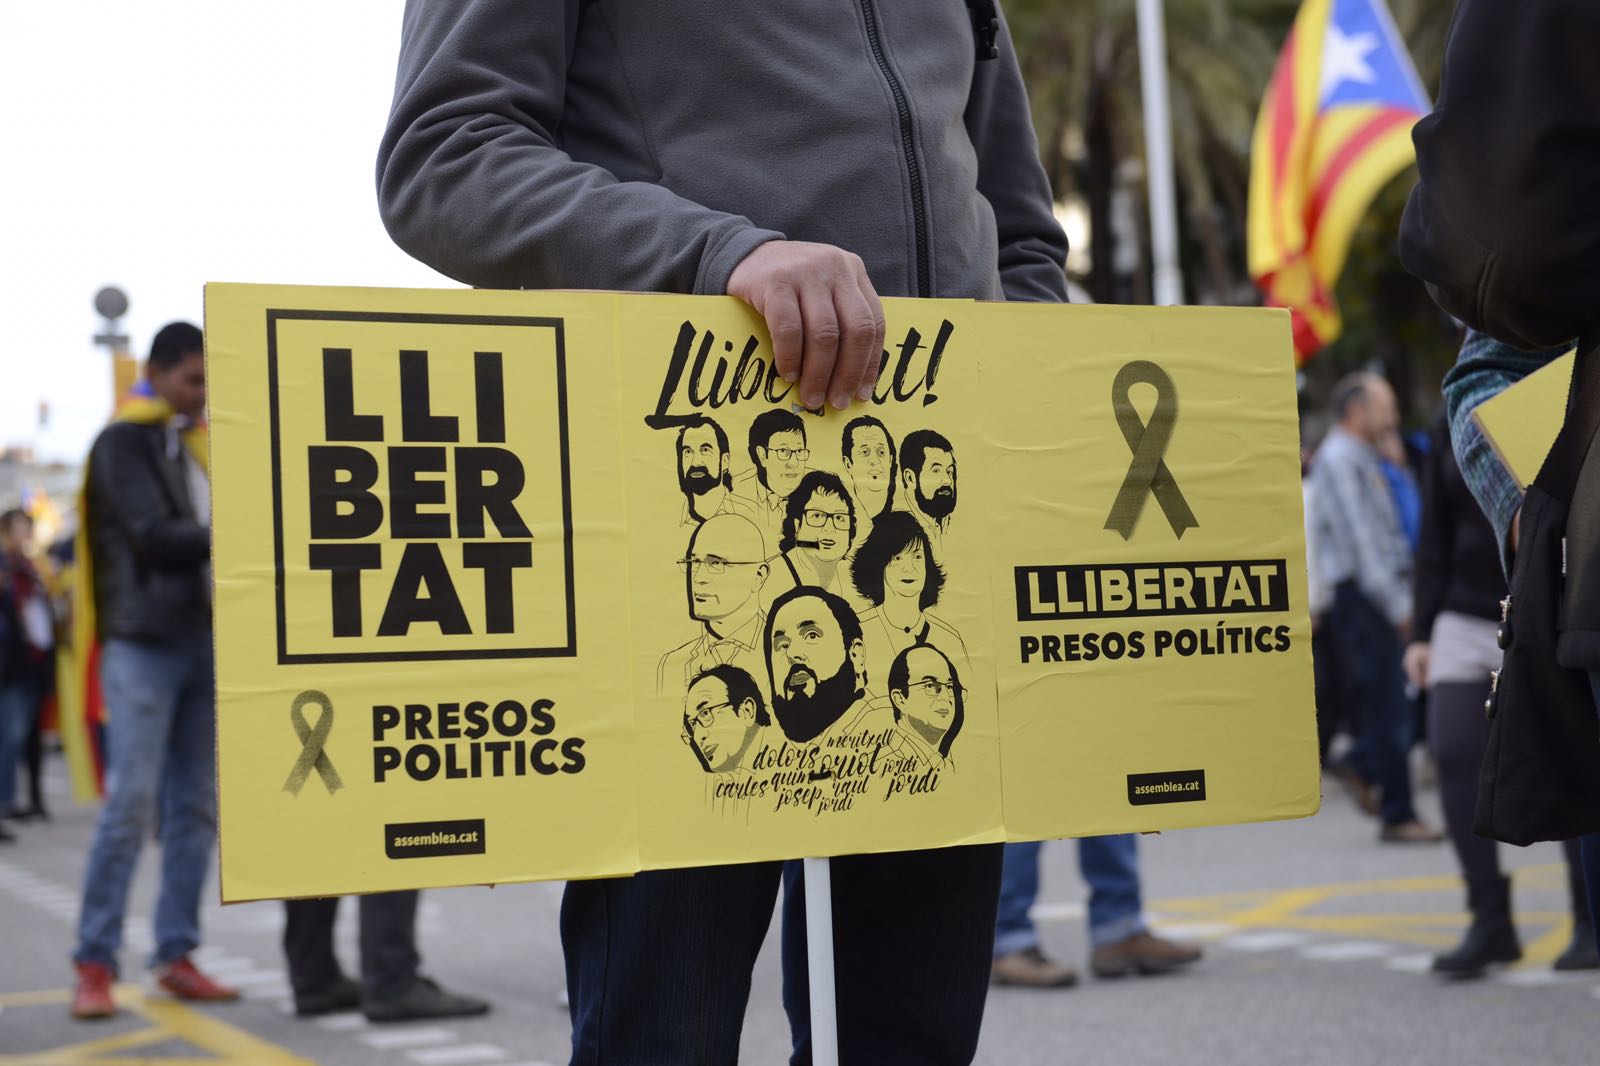 El centre de Barcelona s'omple de símbols a favor dels presos